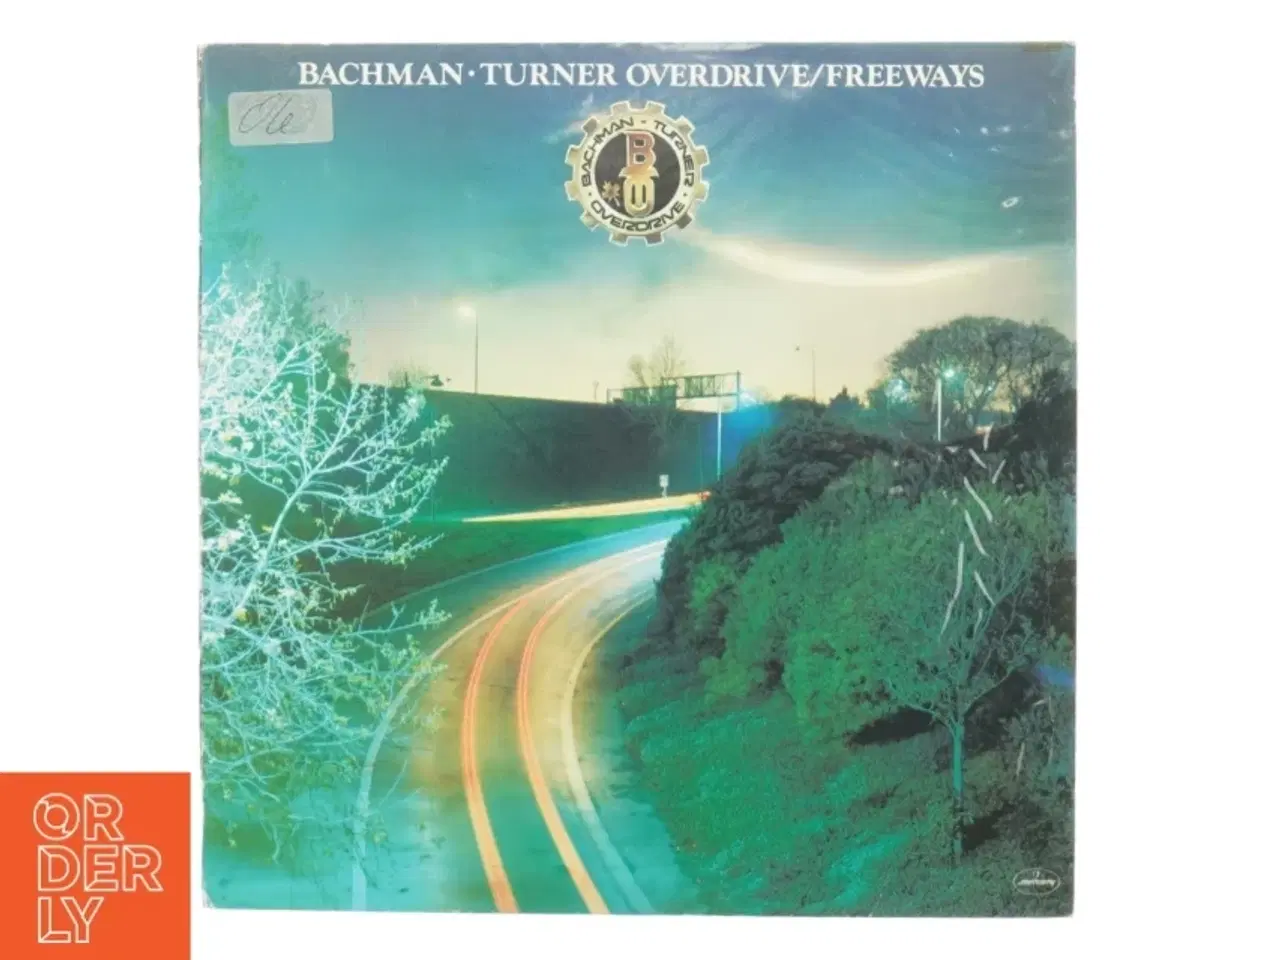 Billede 1 - Bachman Turner overdrive, freeways fra Mercury (str. 30 cm)